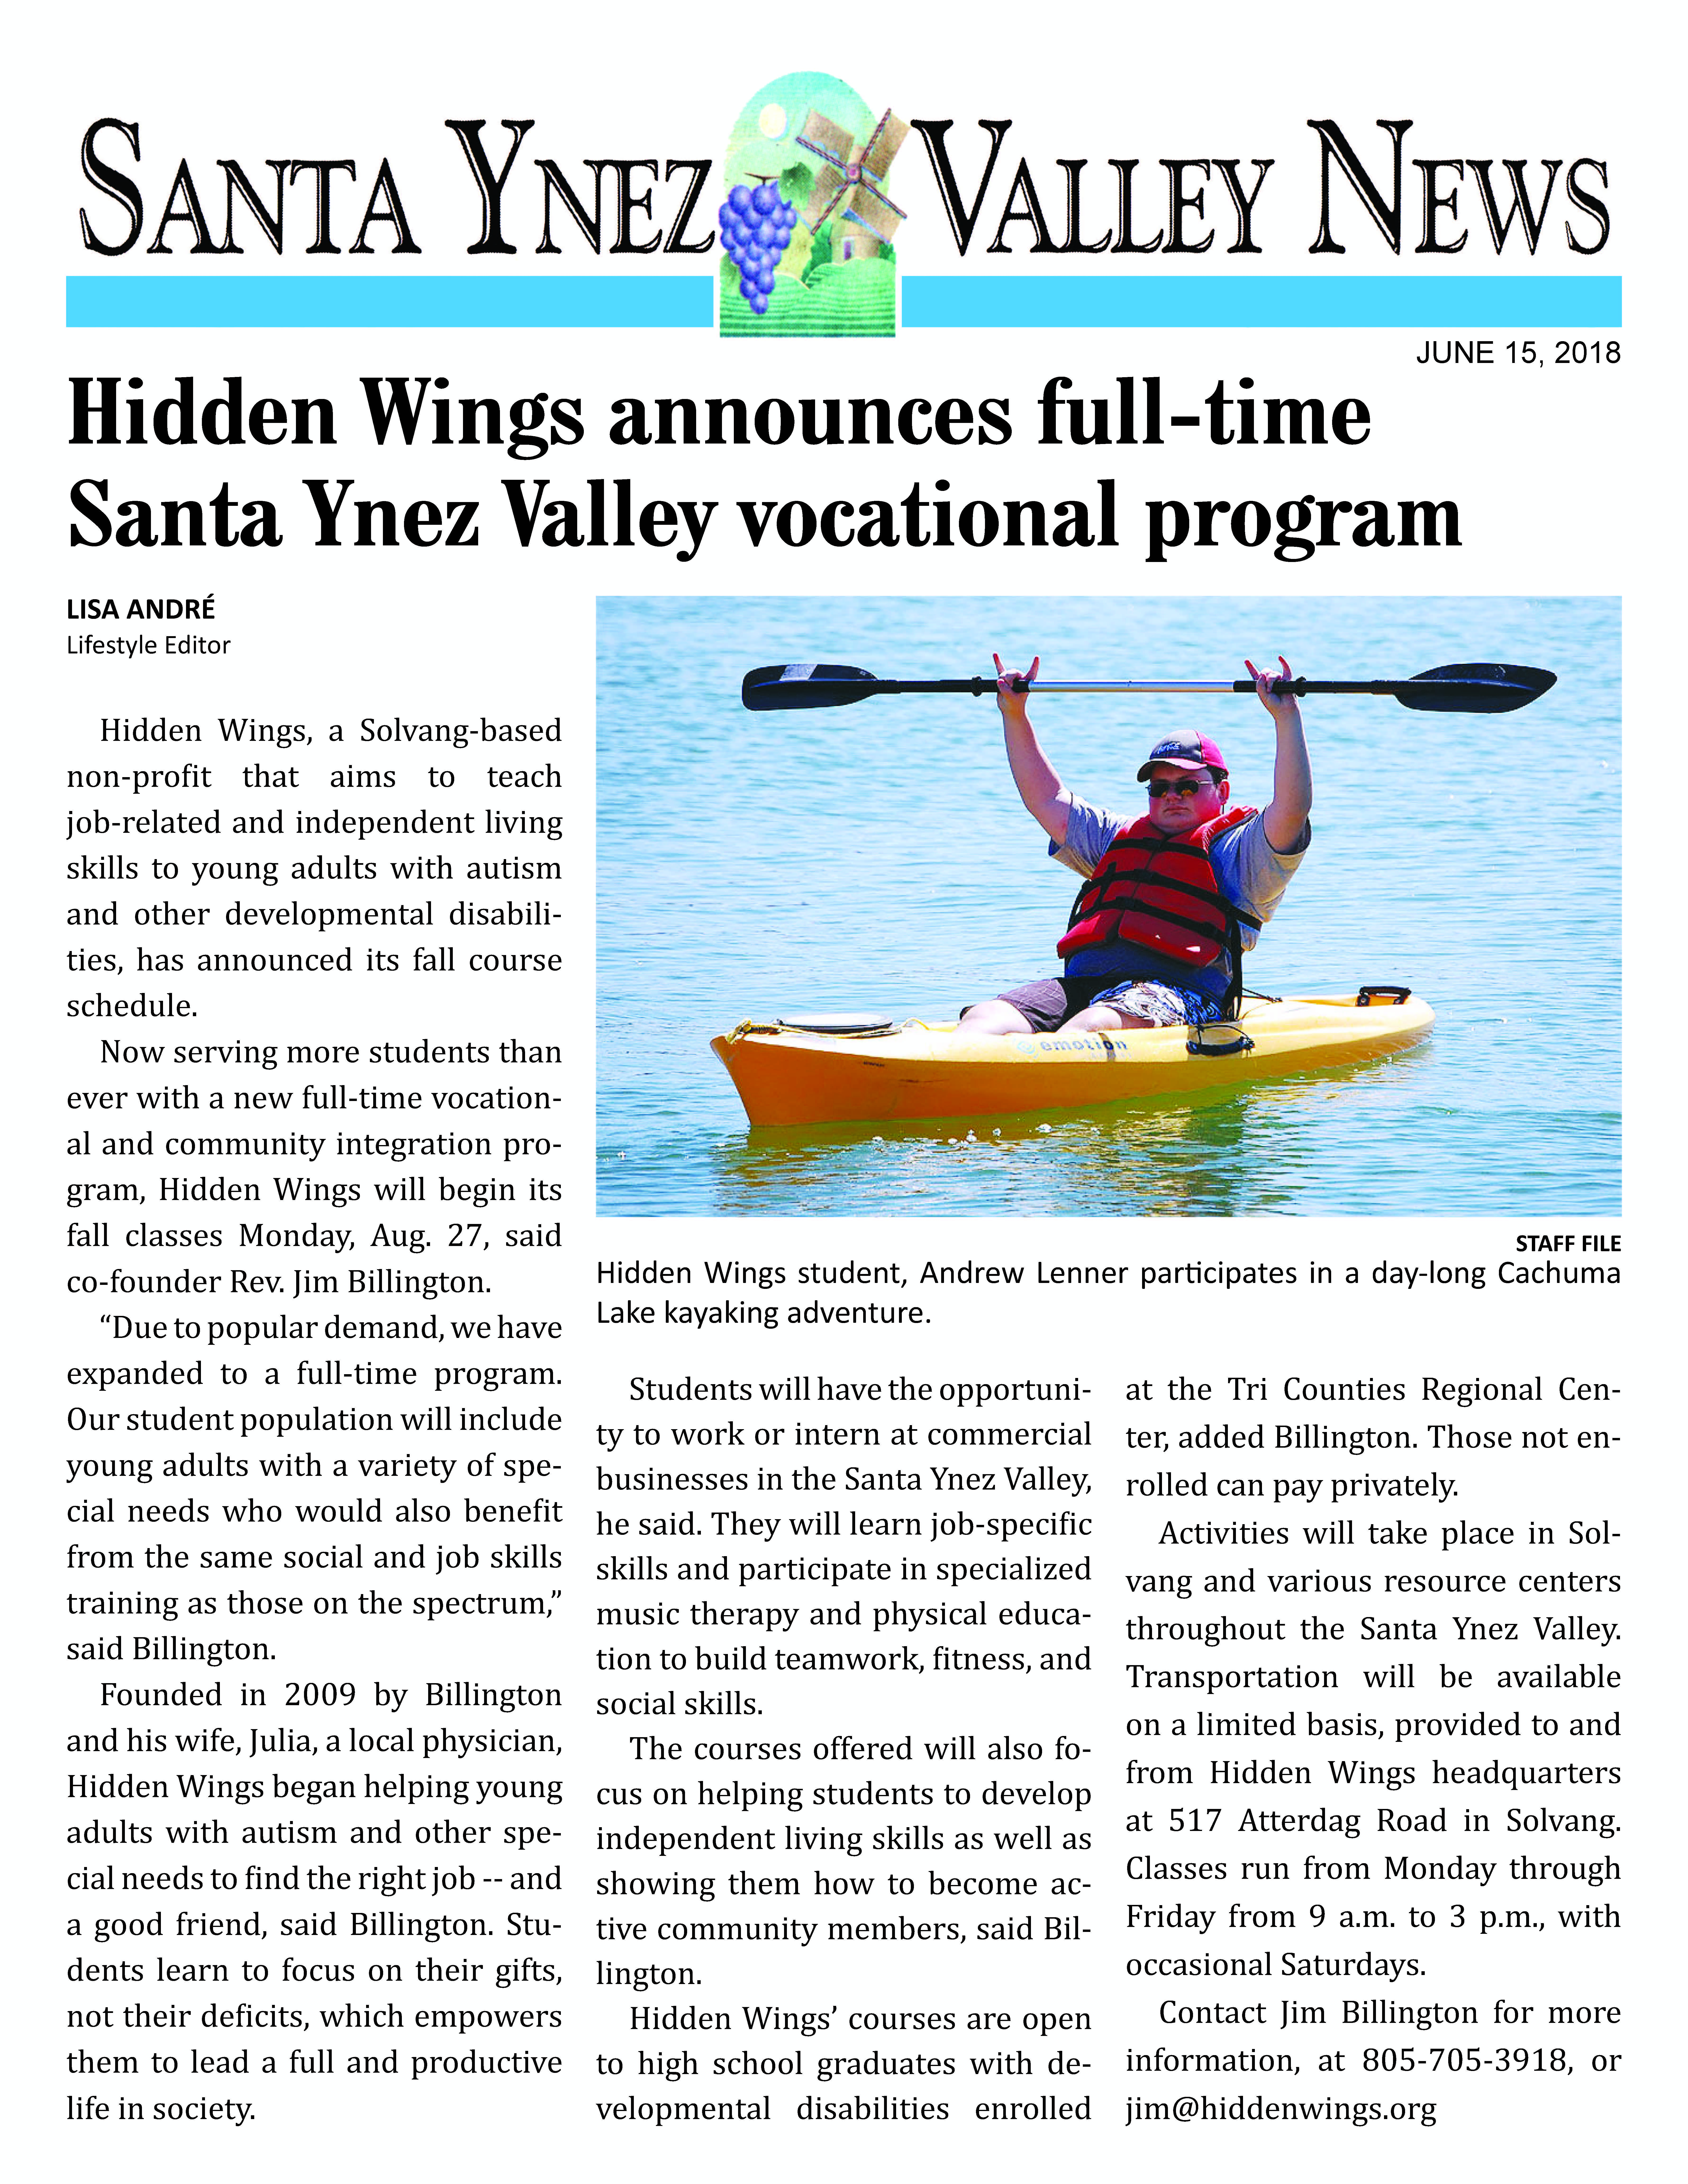 Hidden Wings Announces Full Time Vocation Program